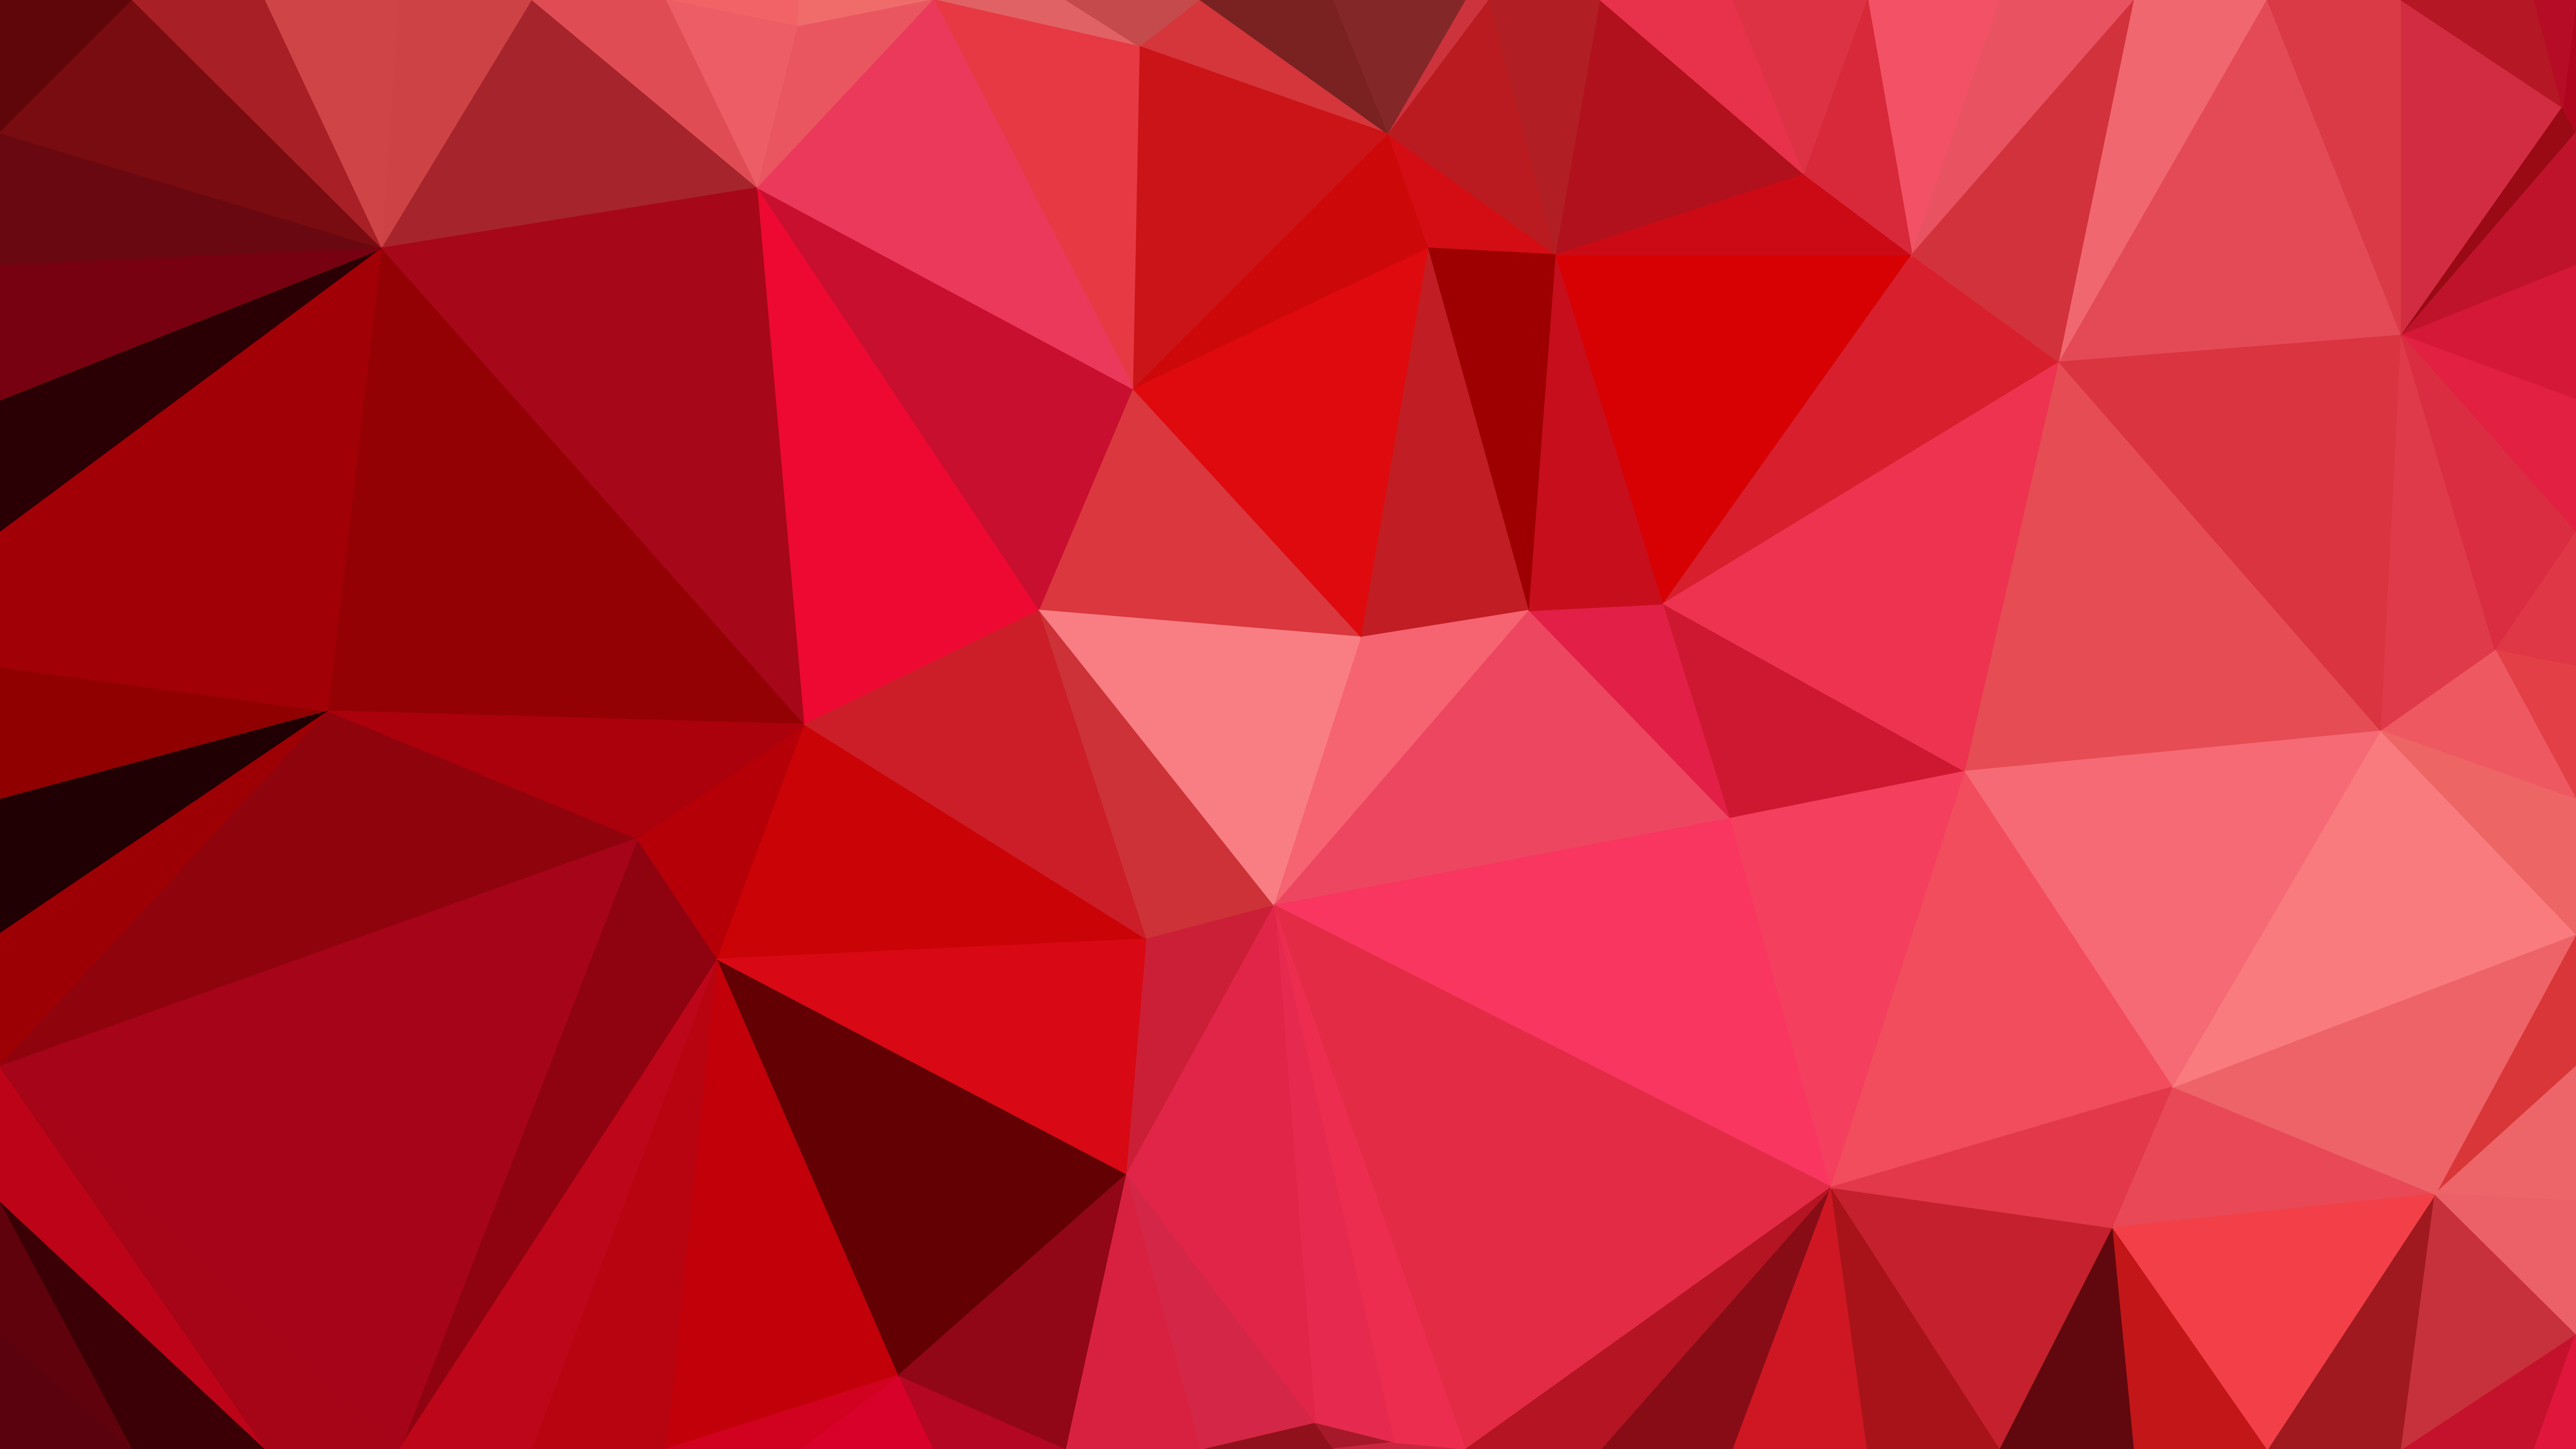 Dark Red Polygonal Background Design